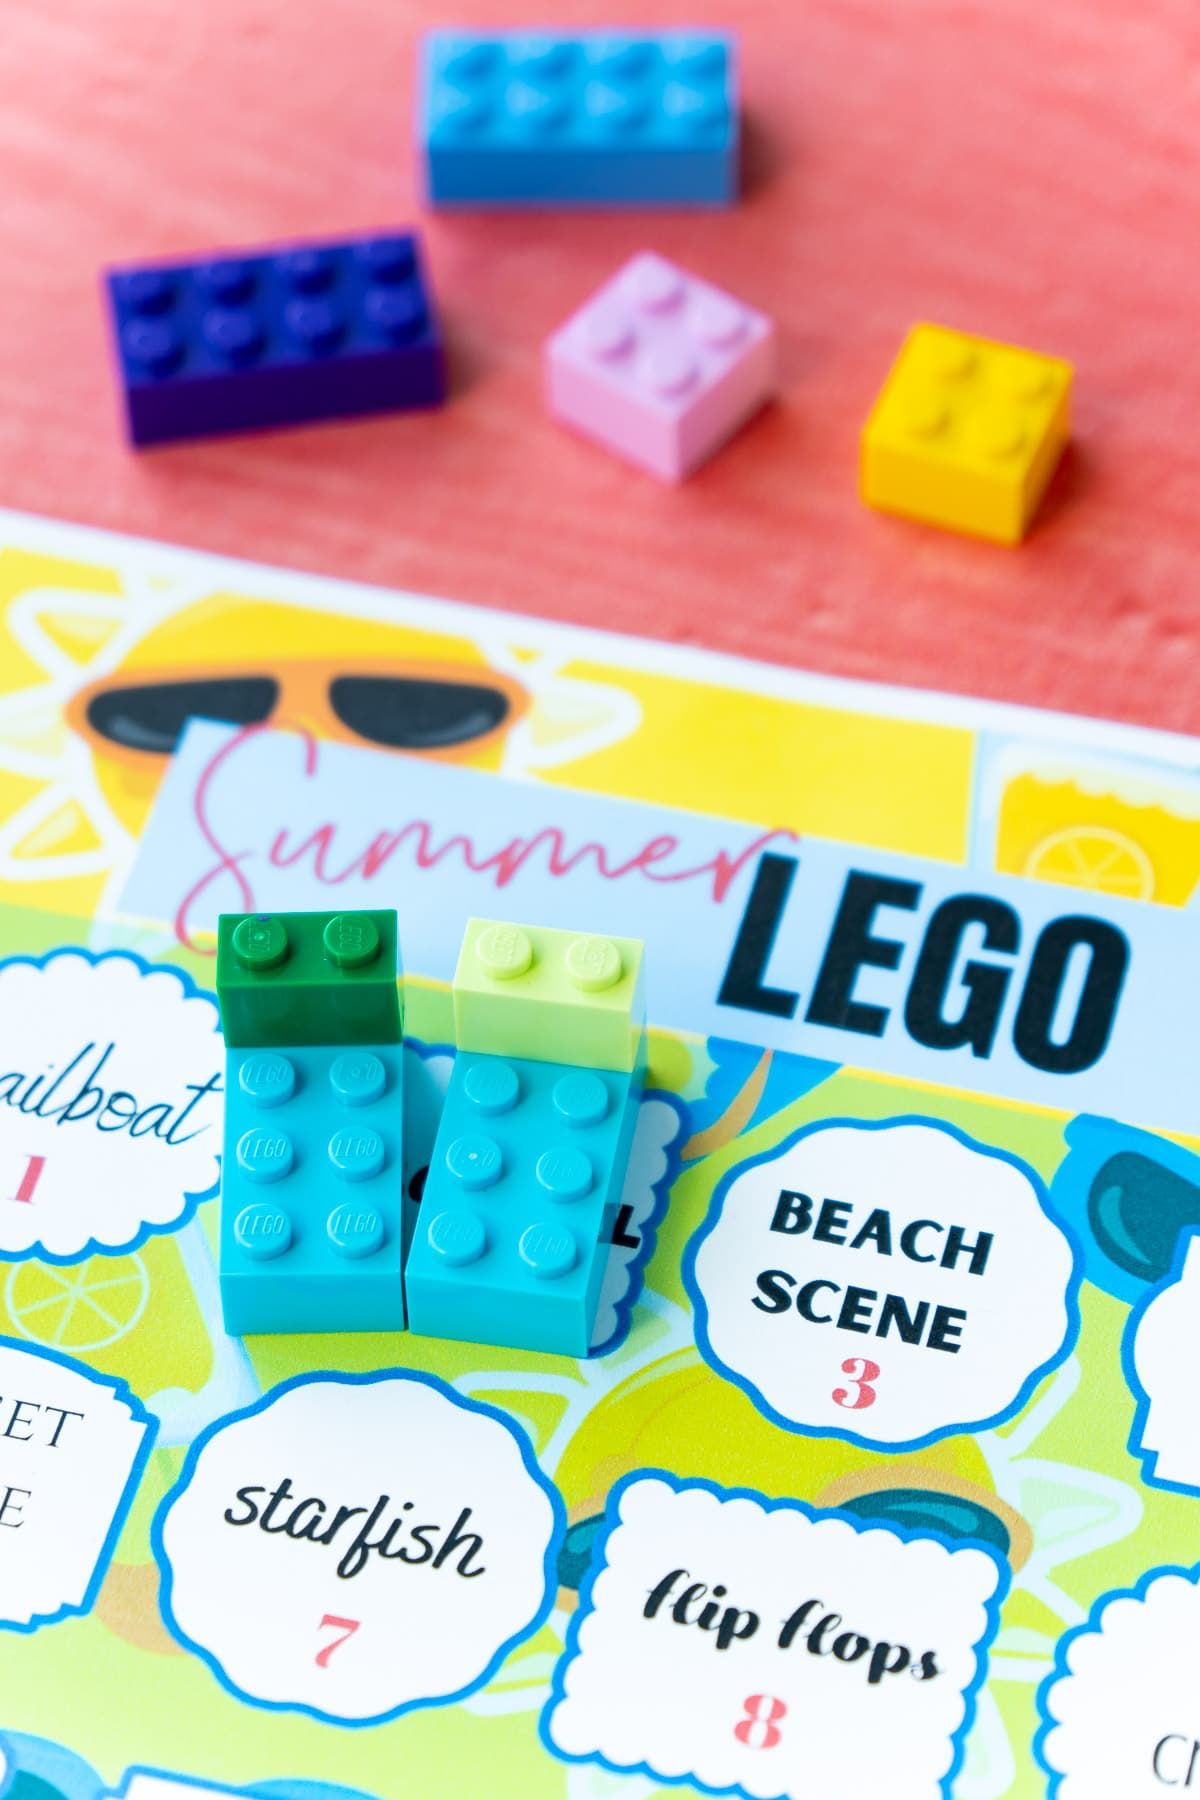 Ghế bãi biển trên đỉnh của ý tưởng thách thức lego